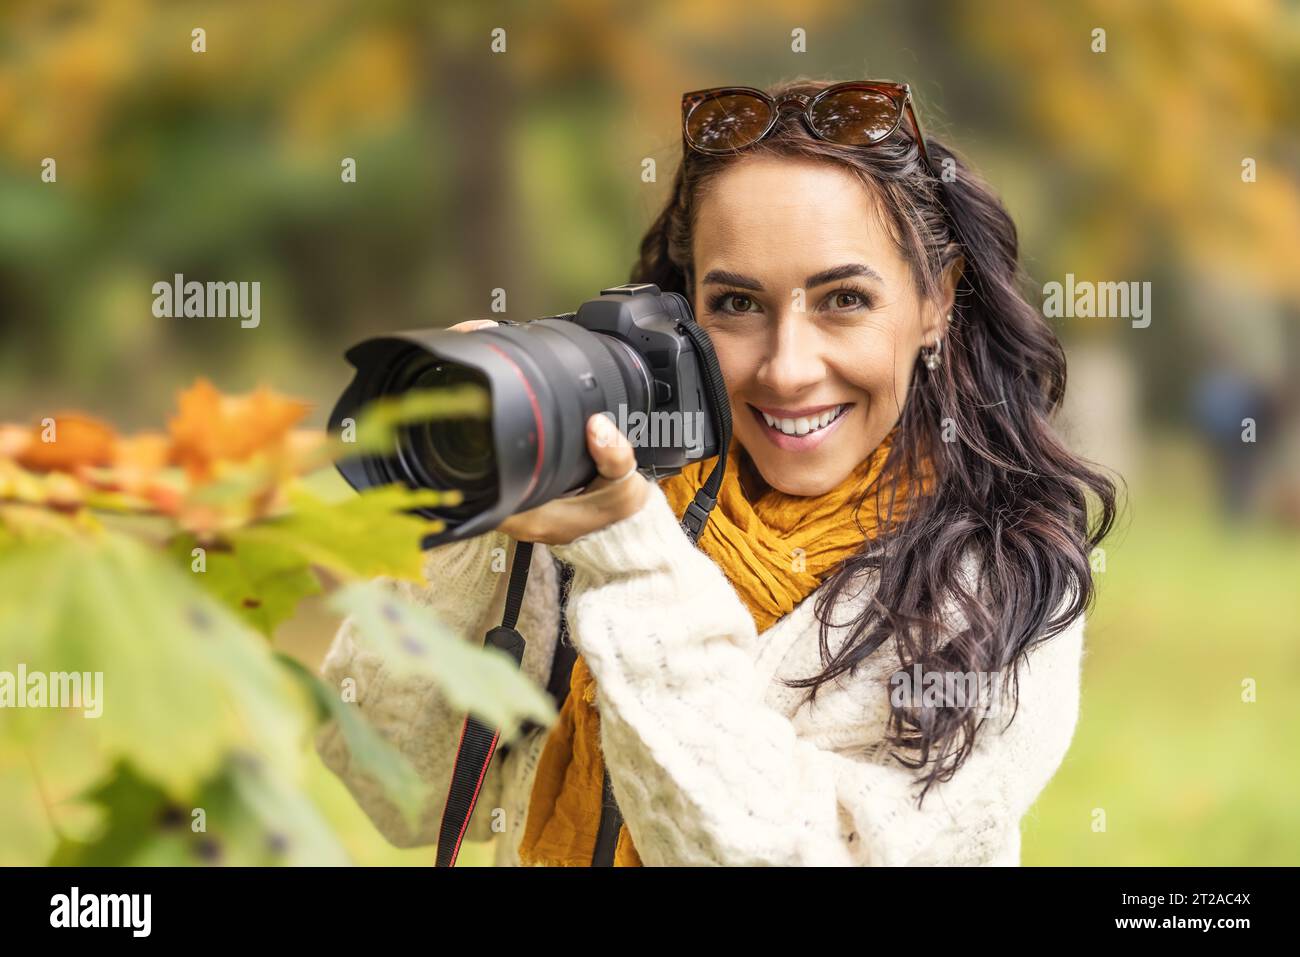 Bella donna con una macchina fotografica professionale e alla ricerca di composizione nella natura autunnale, sorride. Foto Stock